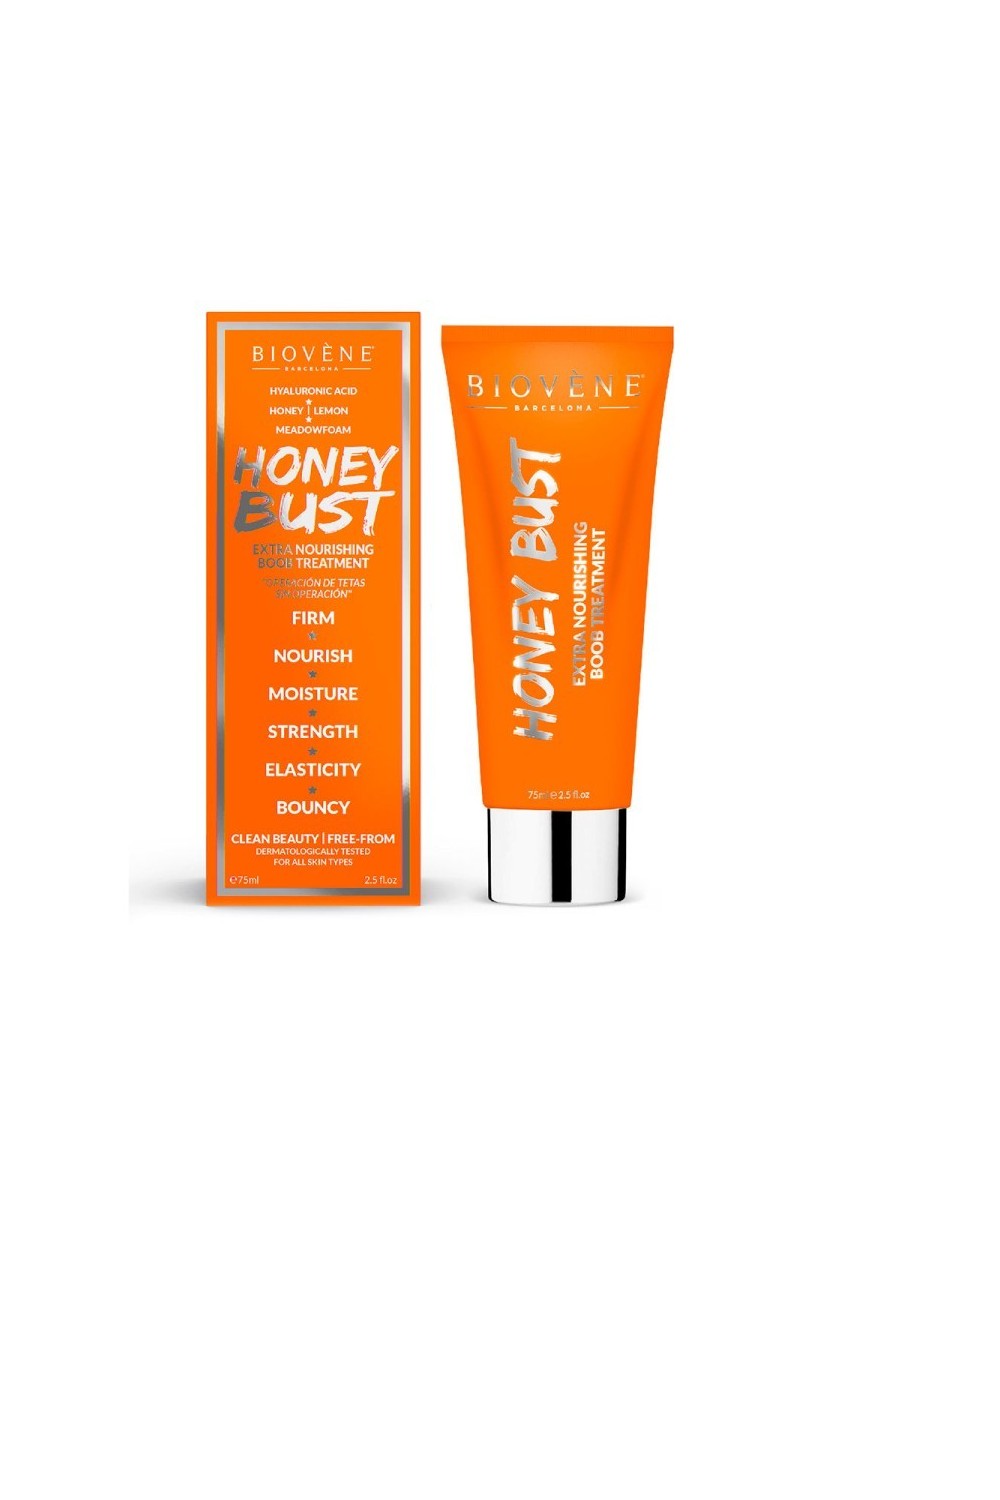 Biovene Honey Bust Extra Nourishing Boob Treatment 75ml